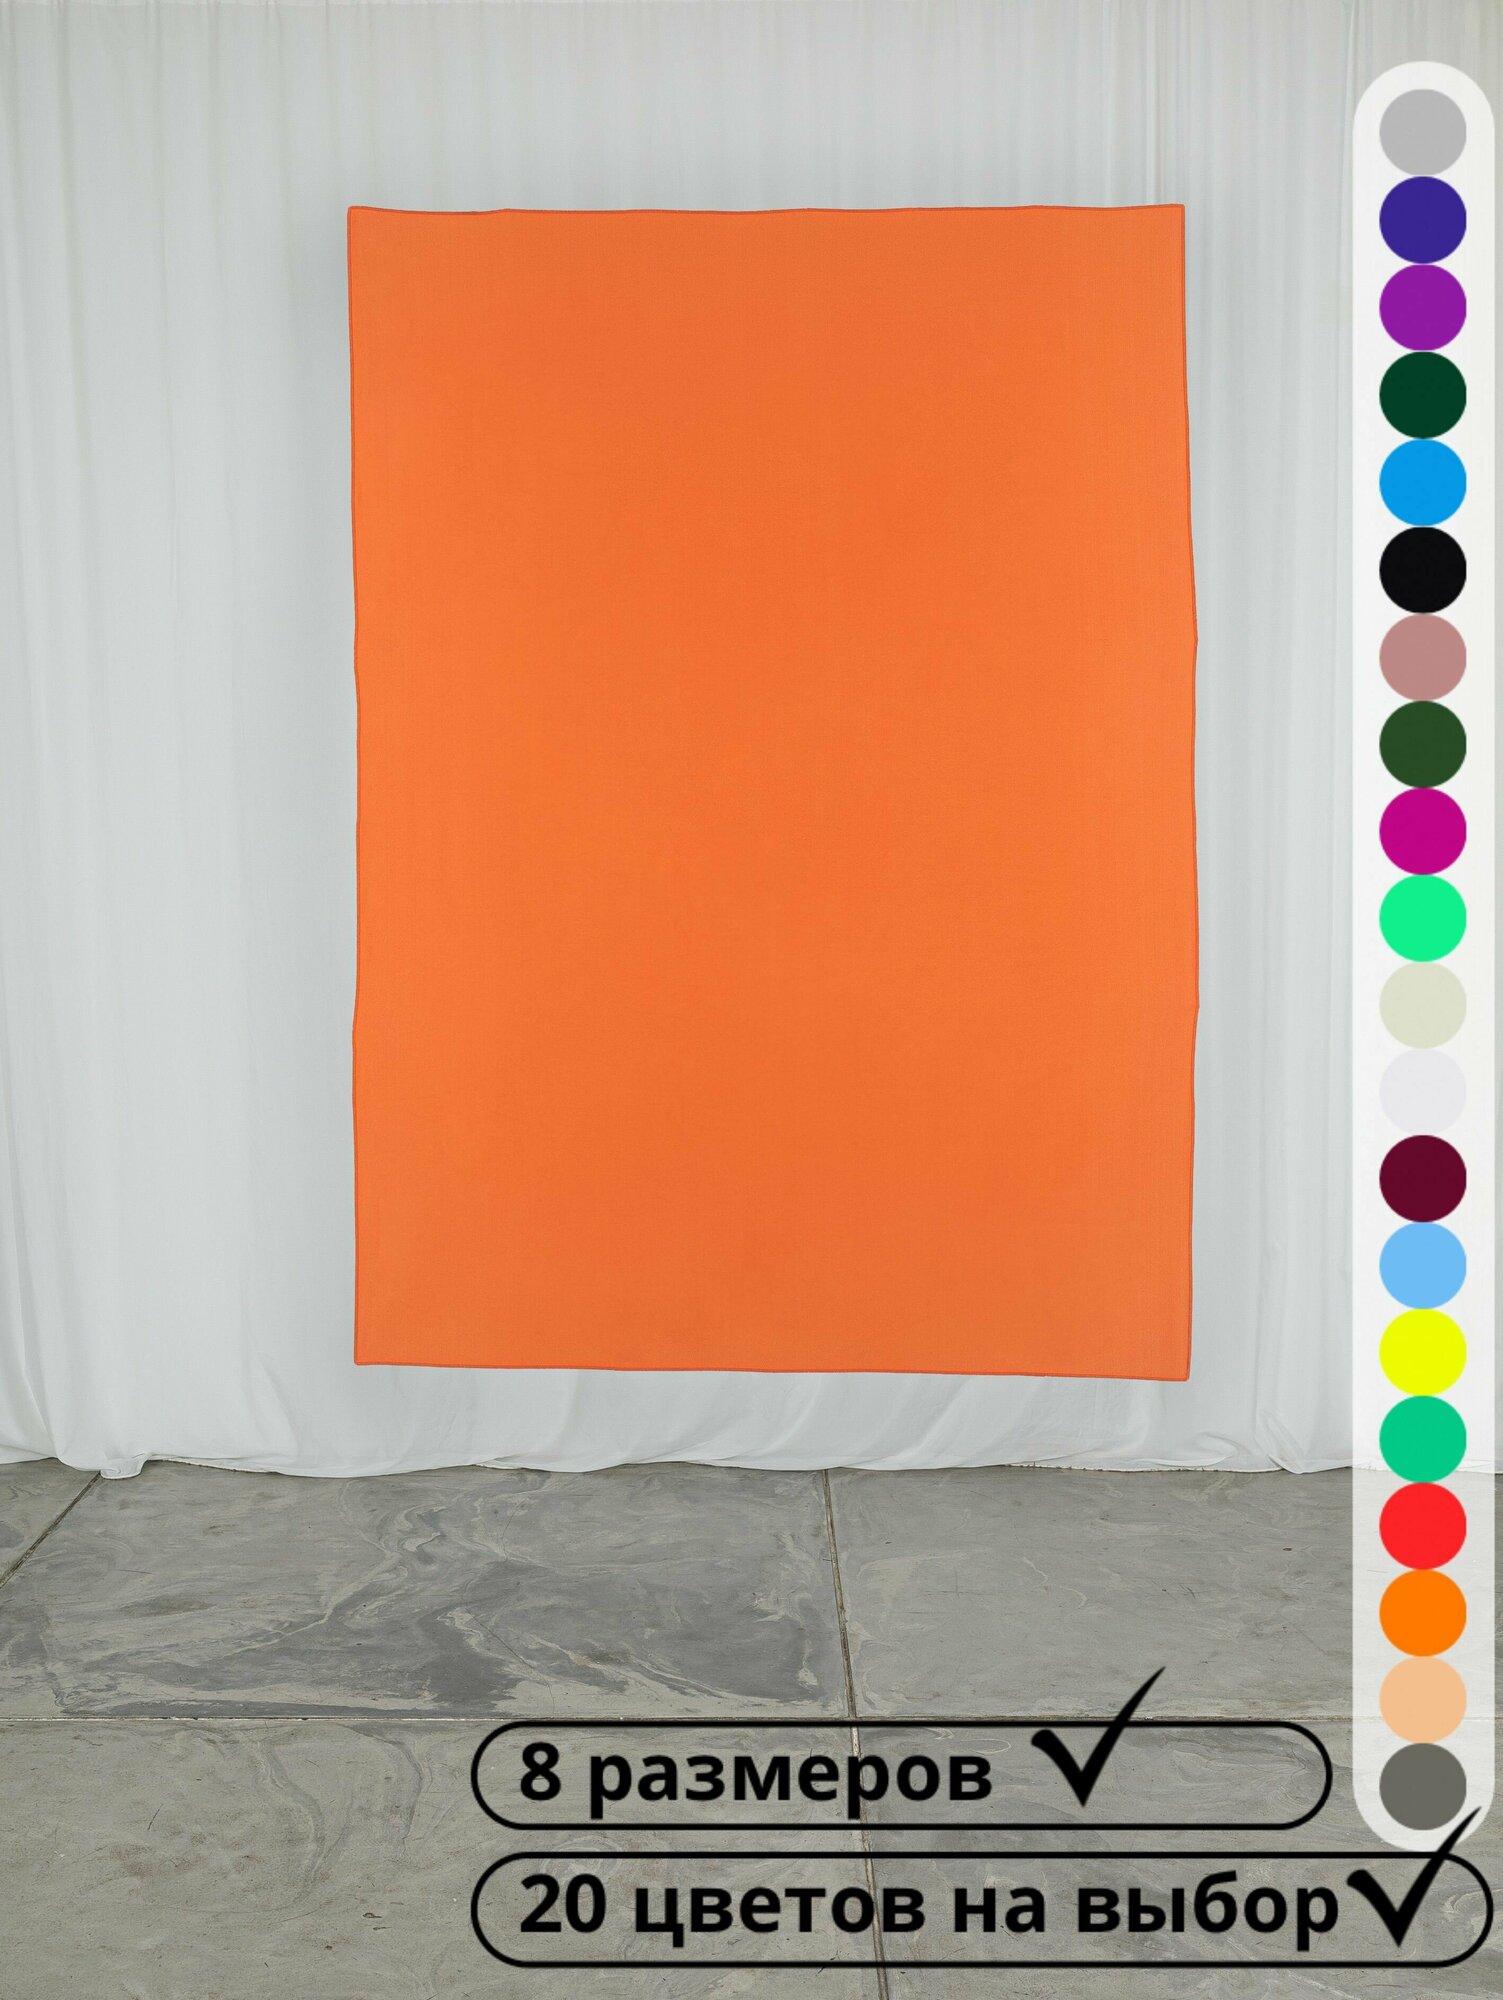 Хромакей 1,5х2 метра / фотофон / оранжевый